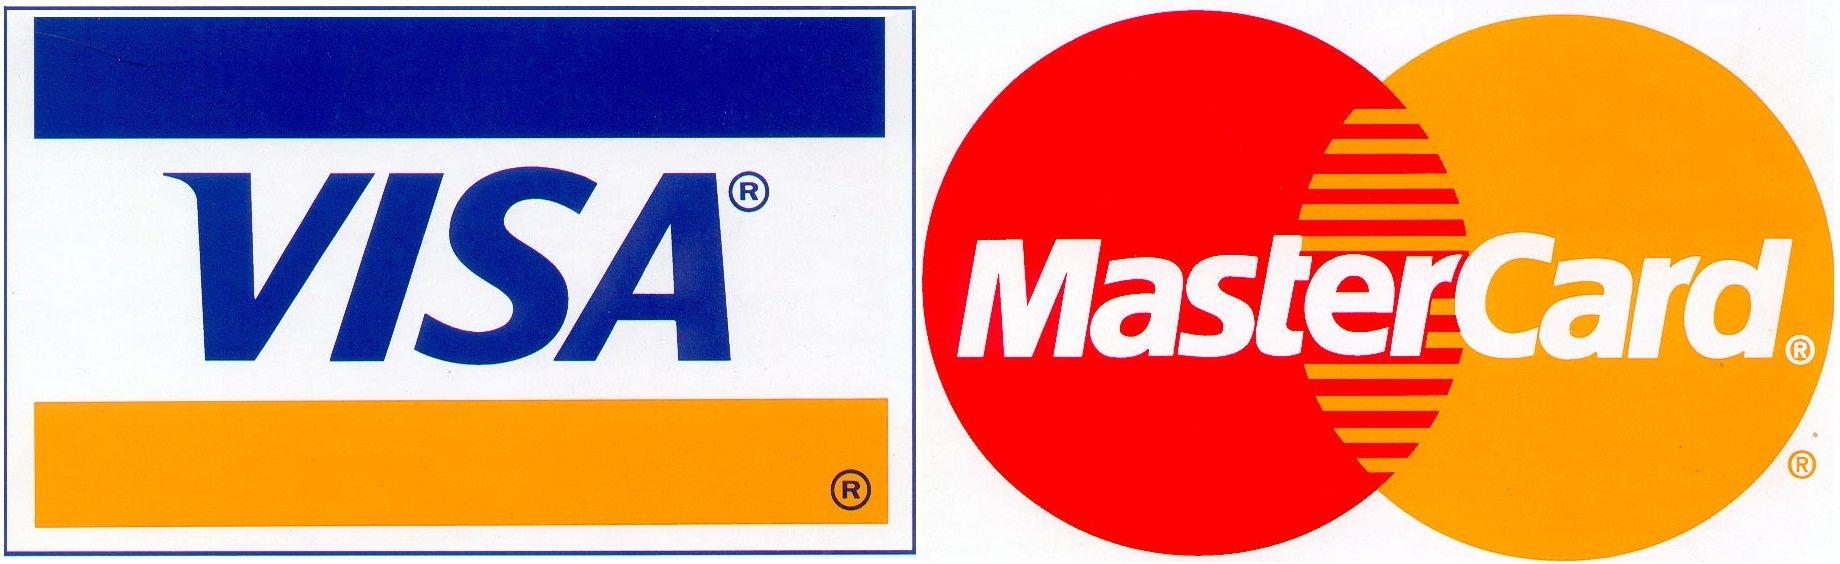 Visa MasterCard Logo - Visa and mastercard Logos